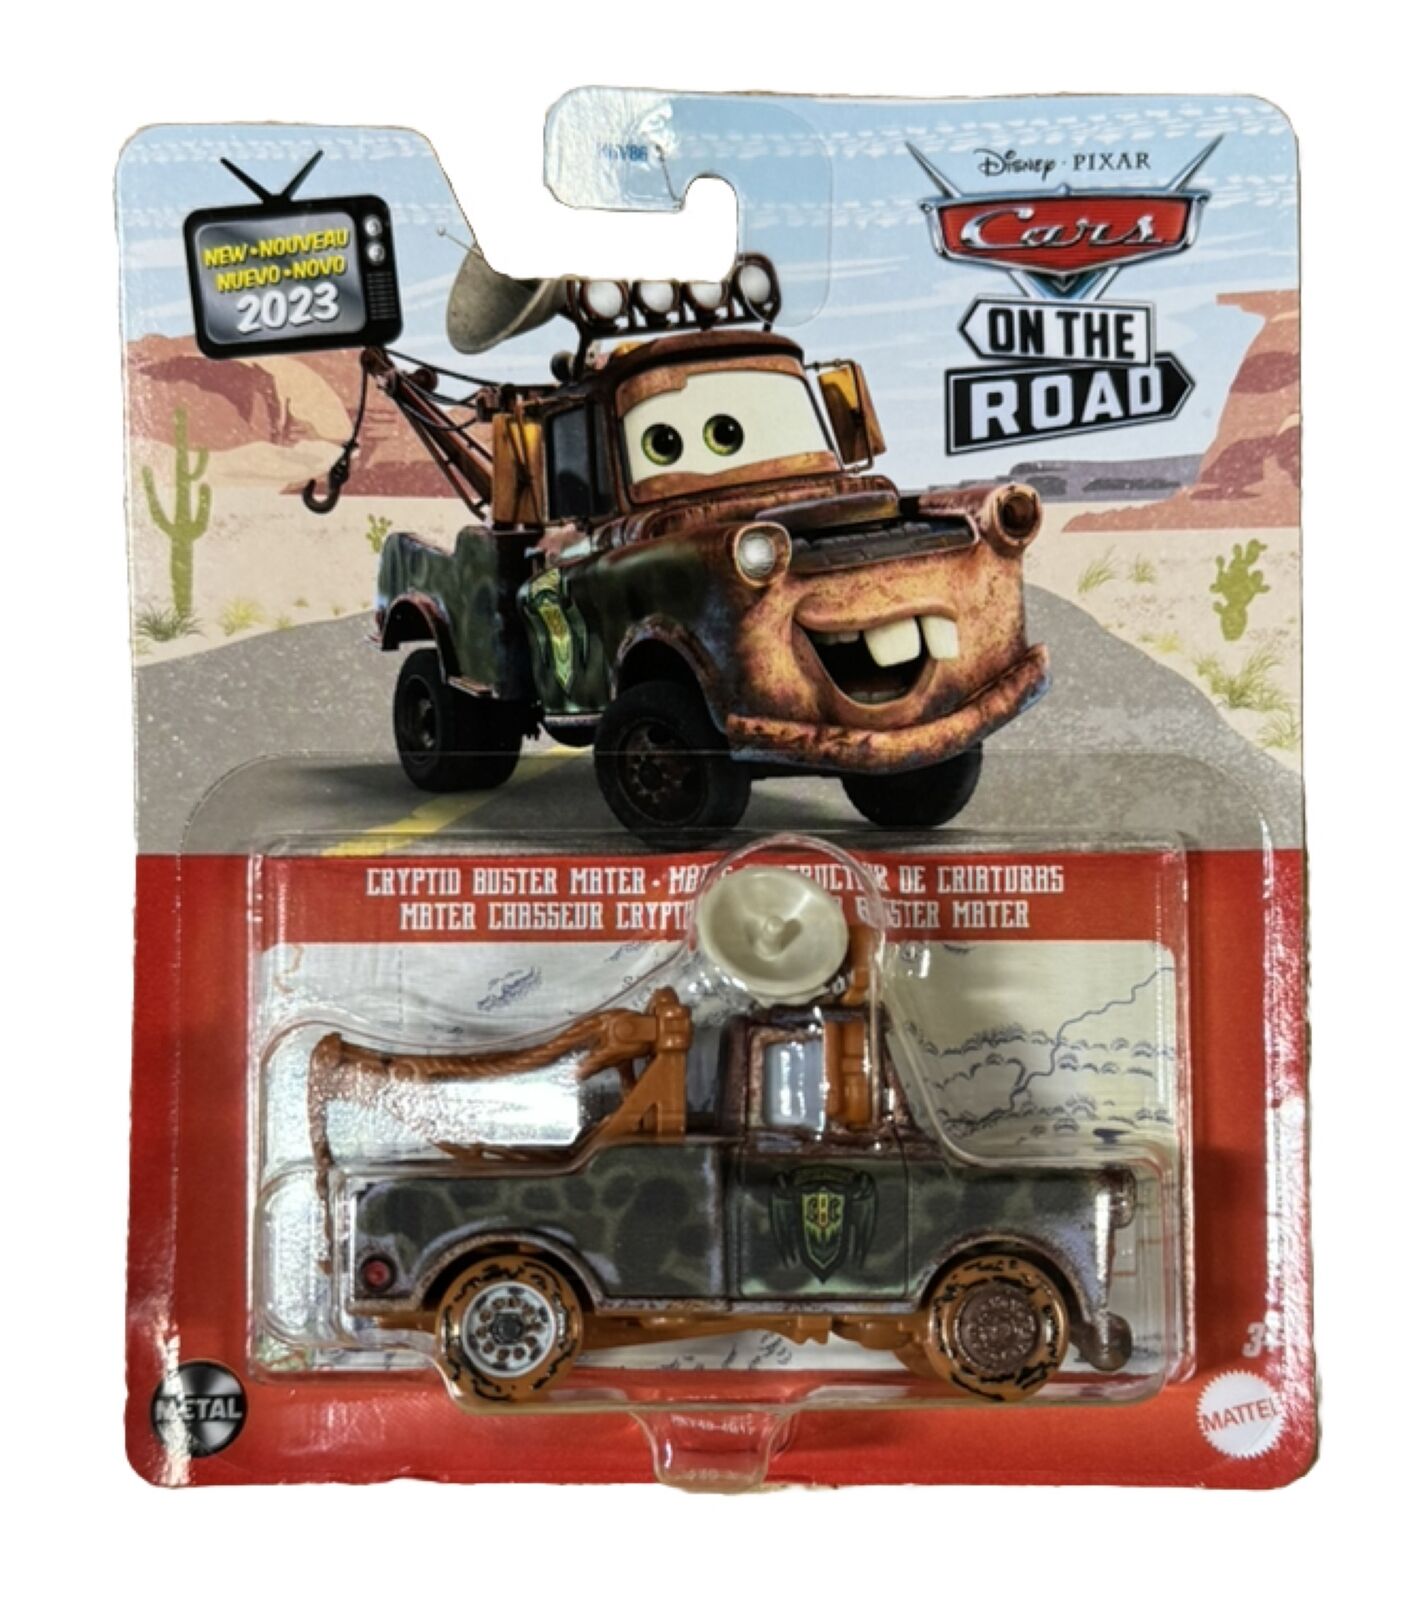 Disney Pixar Cars On the Road “QUADRATORQUOSAUR”die cast Car.